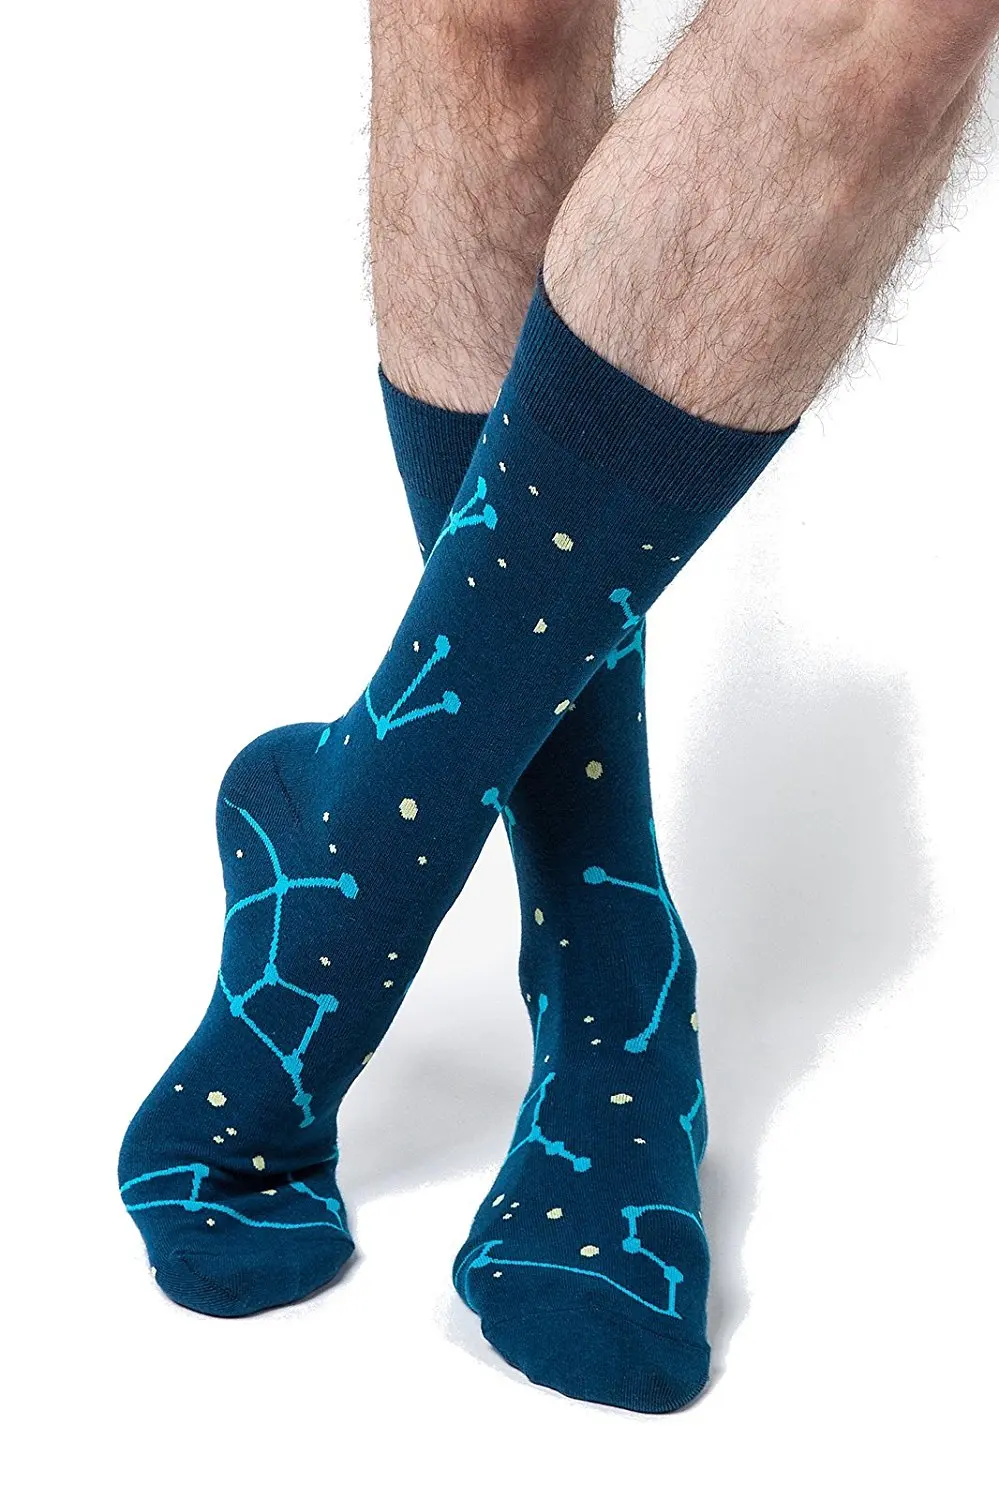 star wars mens dress socks